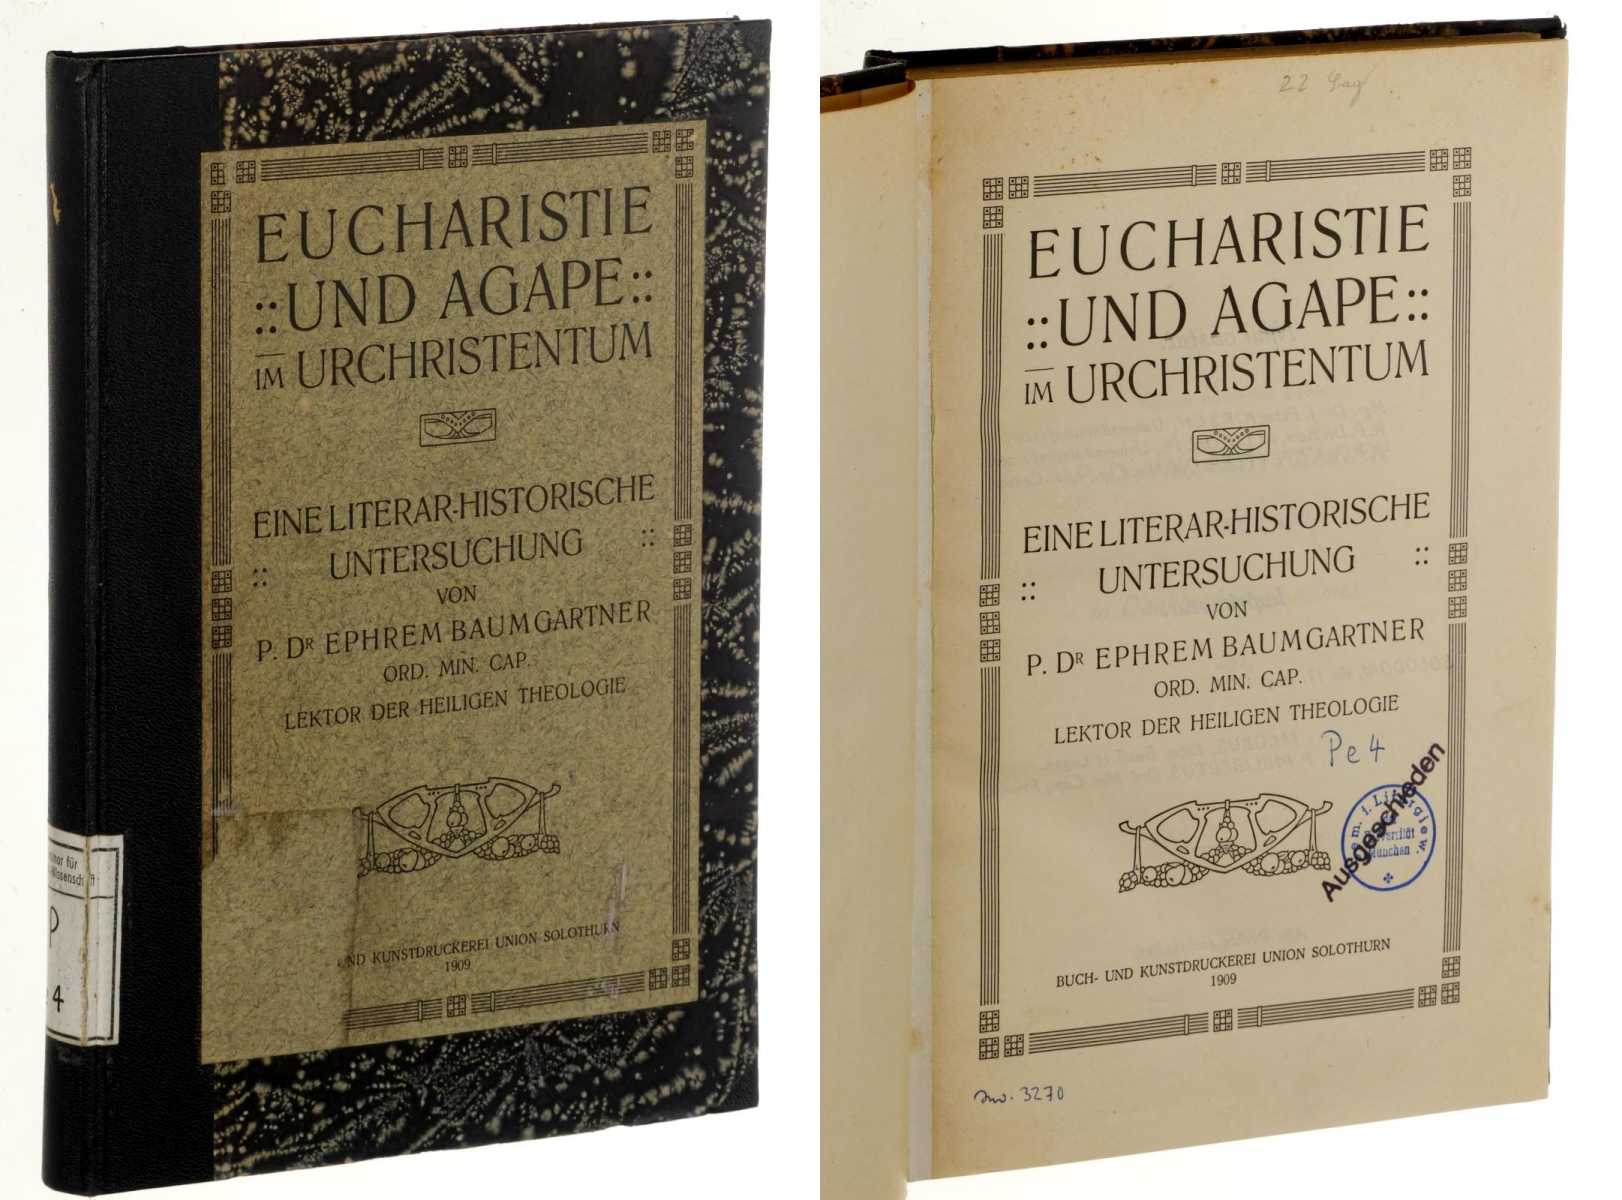 Baumgartner, Ephrem:  Eucharistie und Agape im Urchristentum. Eine literar-historische Untersuchung. 